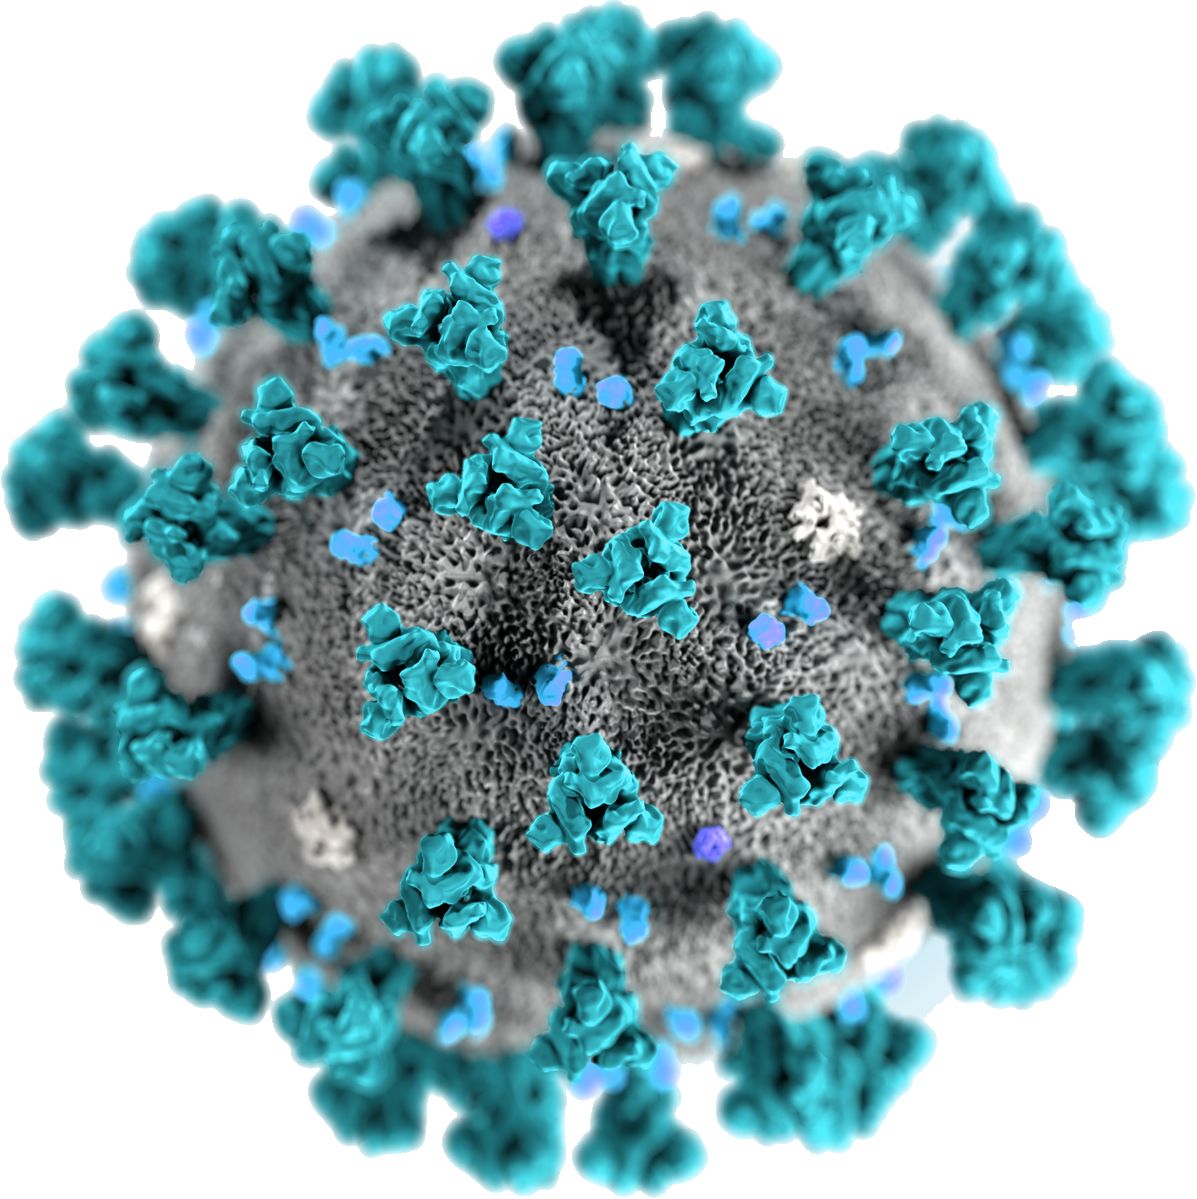 Coronavirus Closeup3 D Rendering